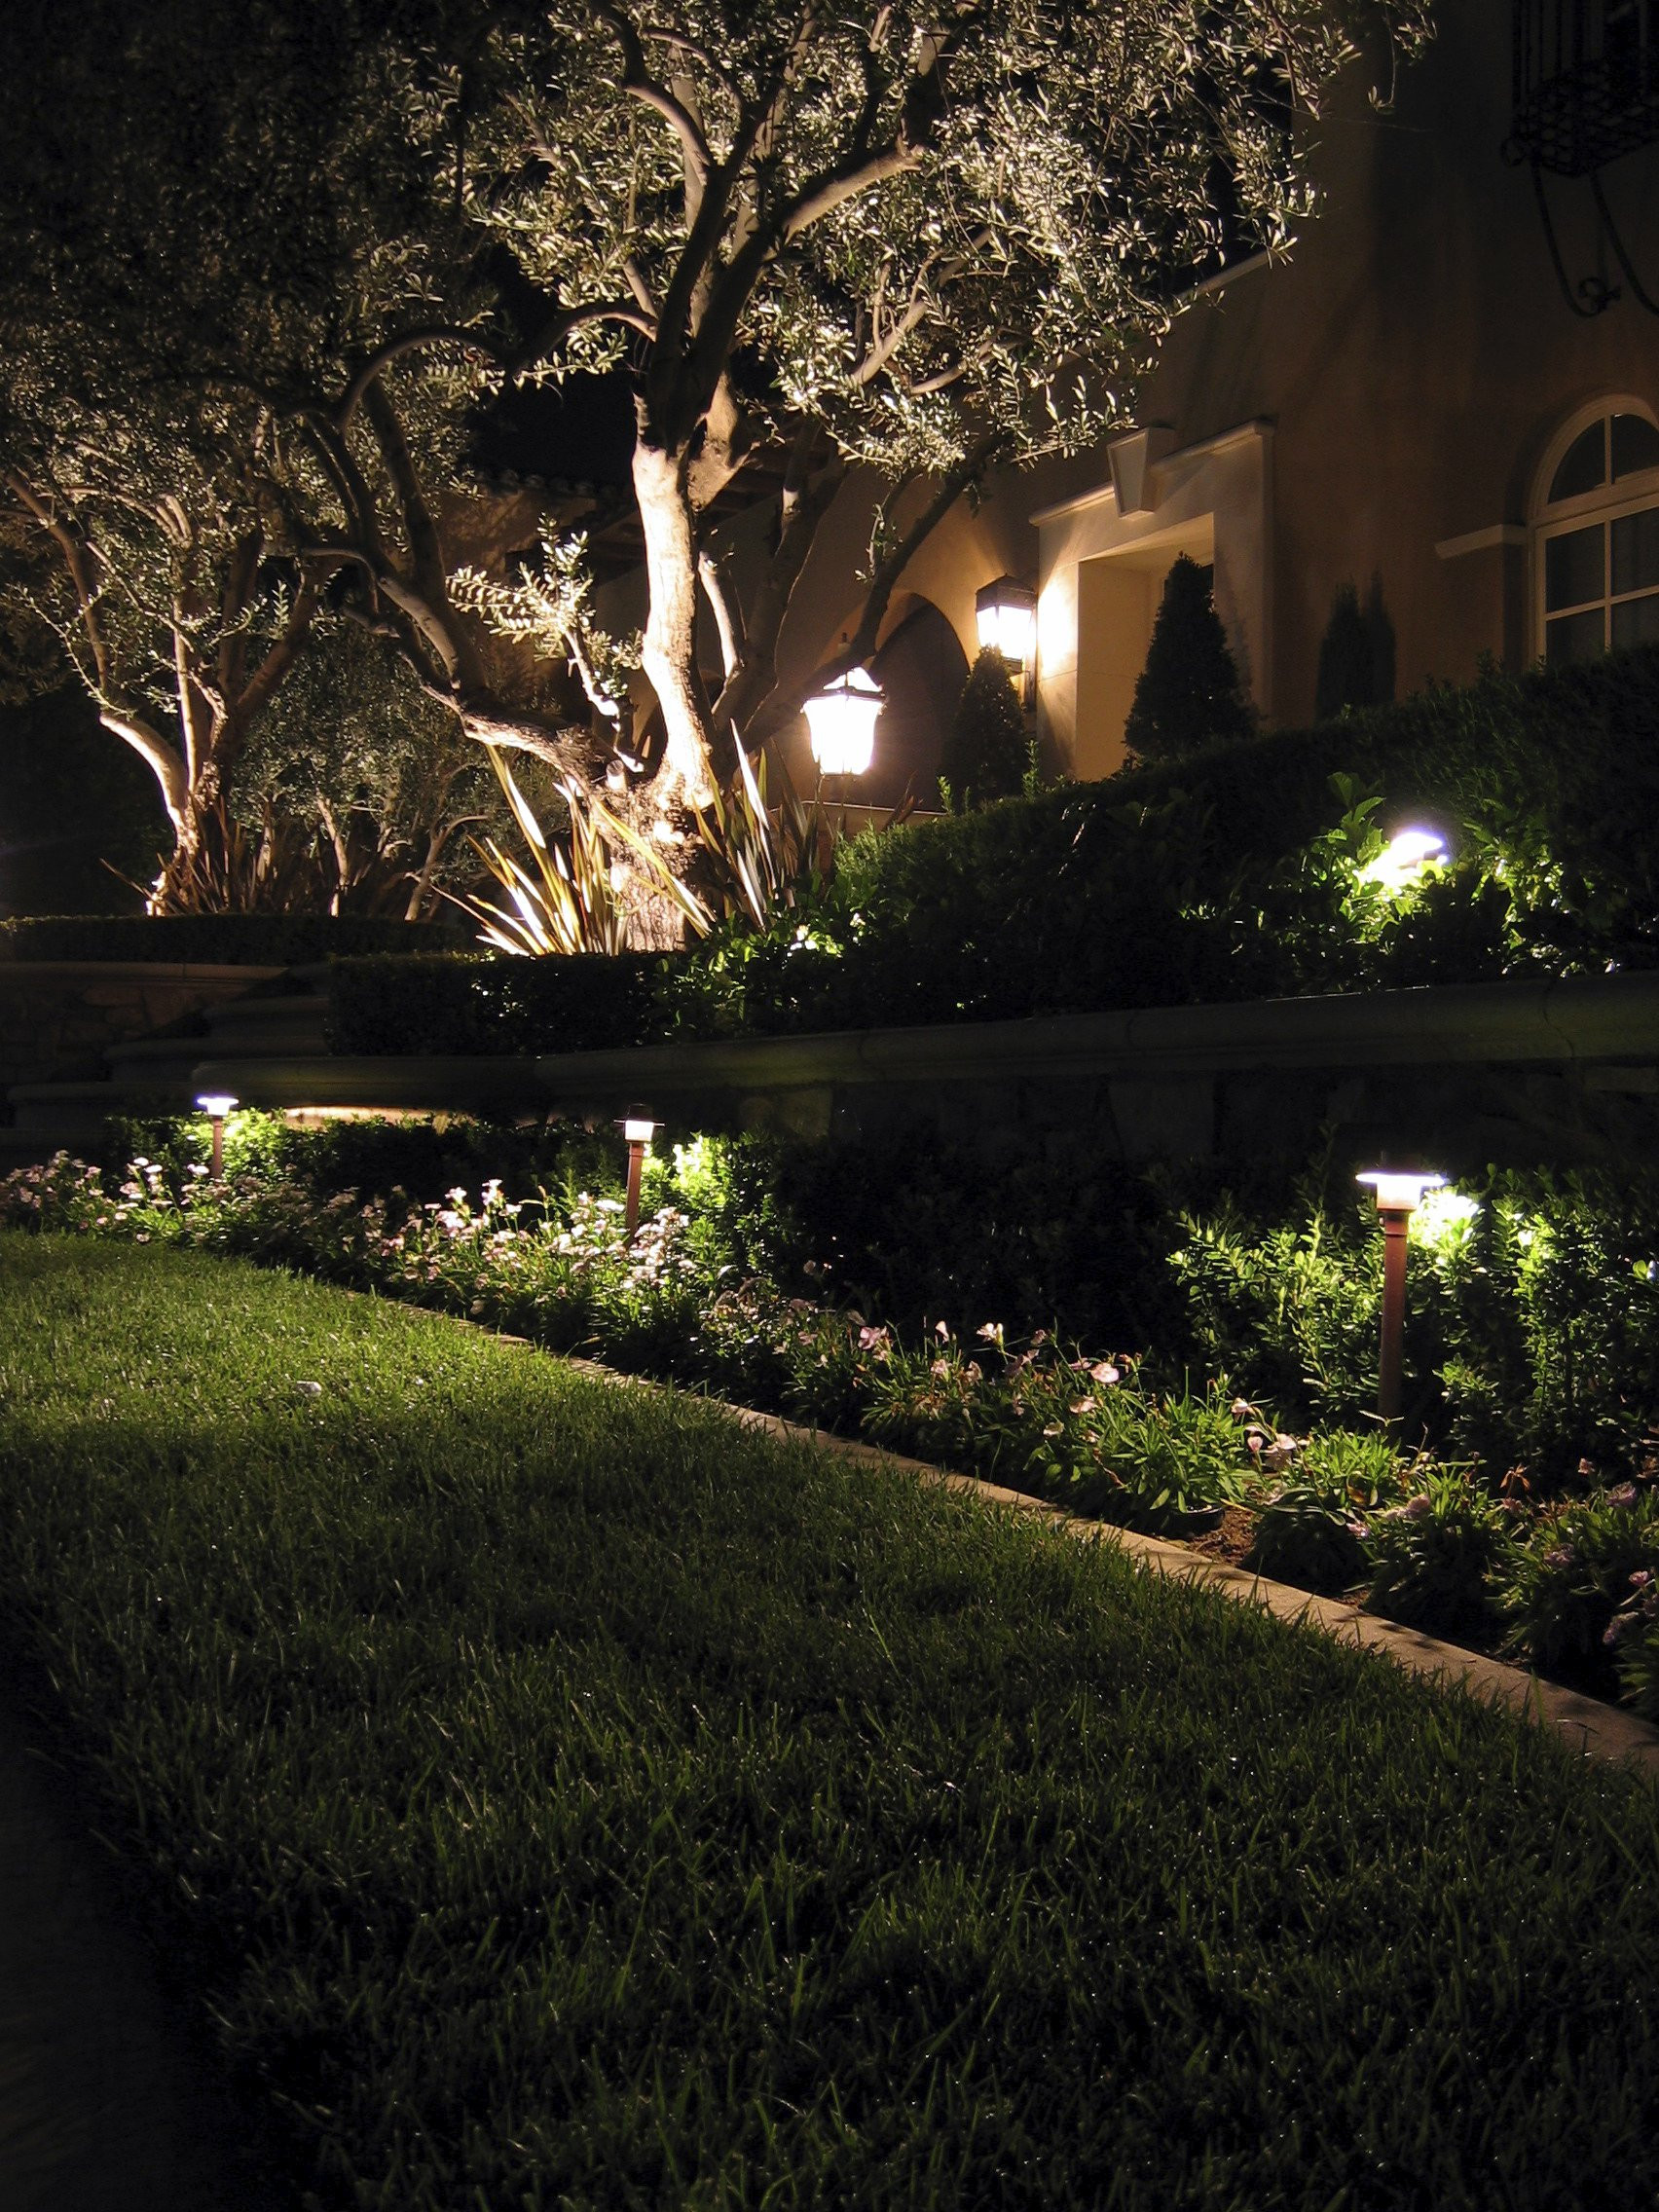 Led Outdoor Landscape Lighting
 7 Inspirational Ideas For Outdoor LED Landscape